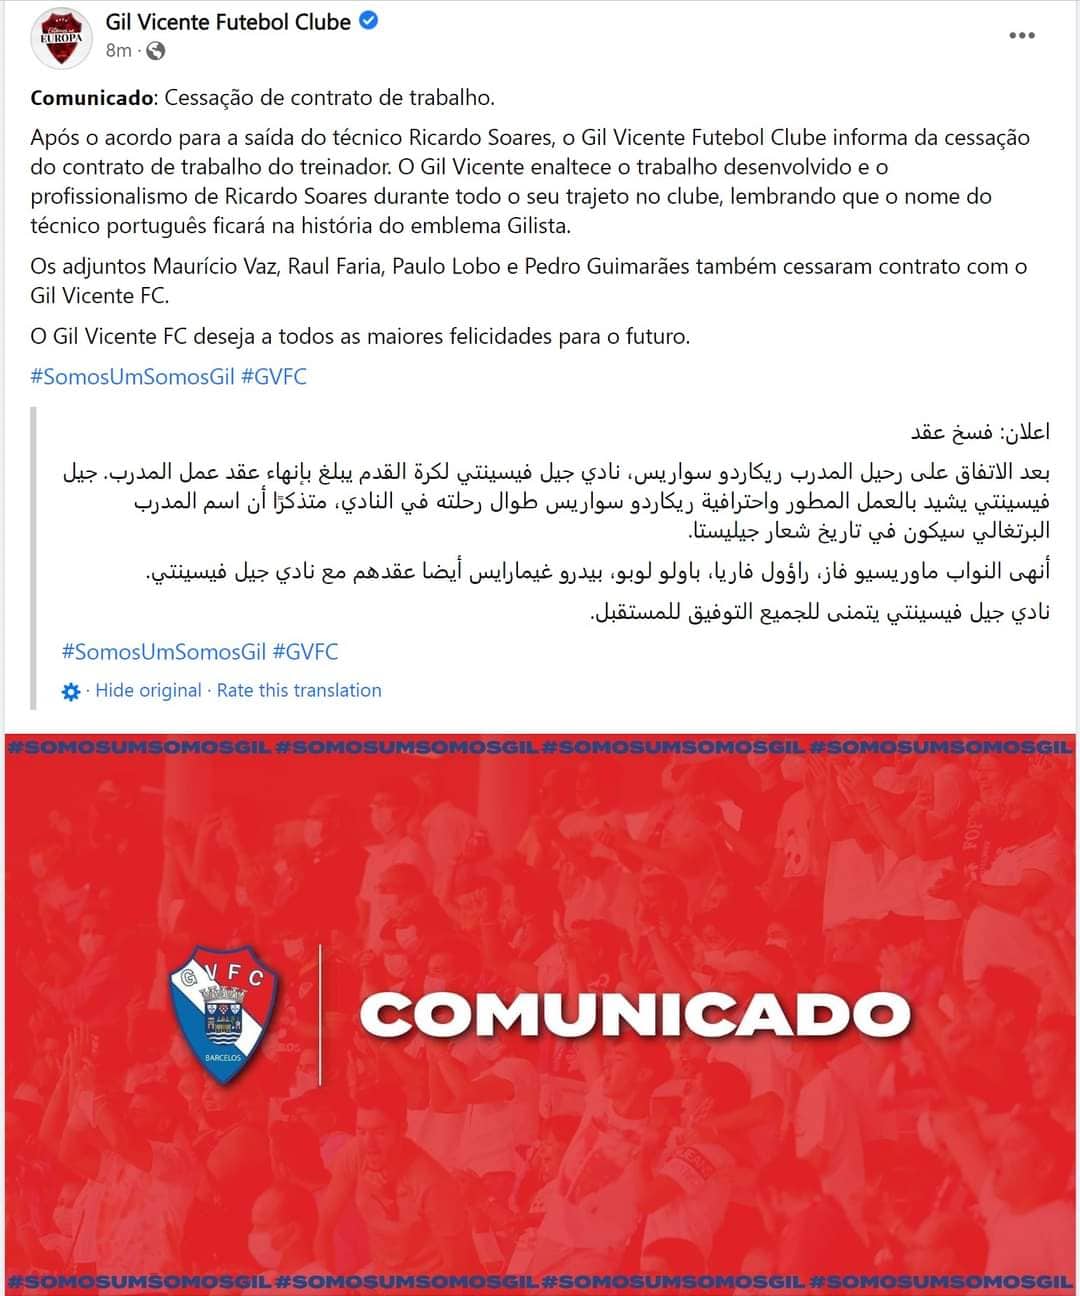 البيان الرسمي من نادي جيل فيسنتي لإعلان فسخ التعاقد مع المدرب البرتلي ريكاردو سواريس